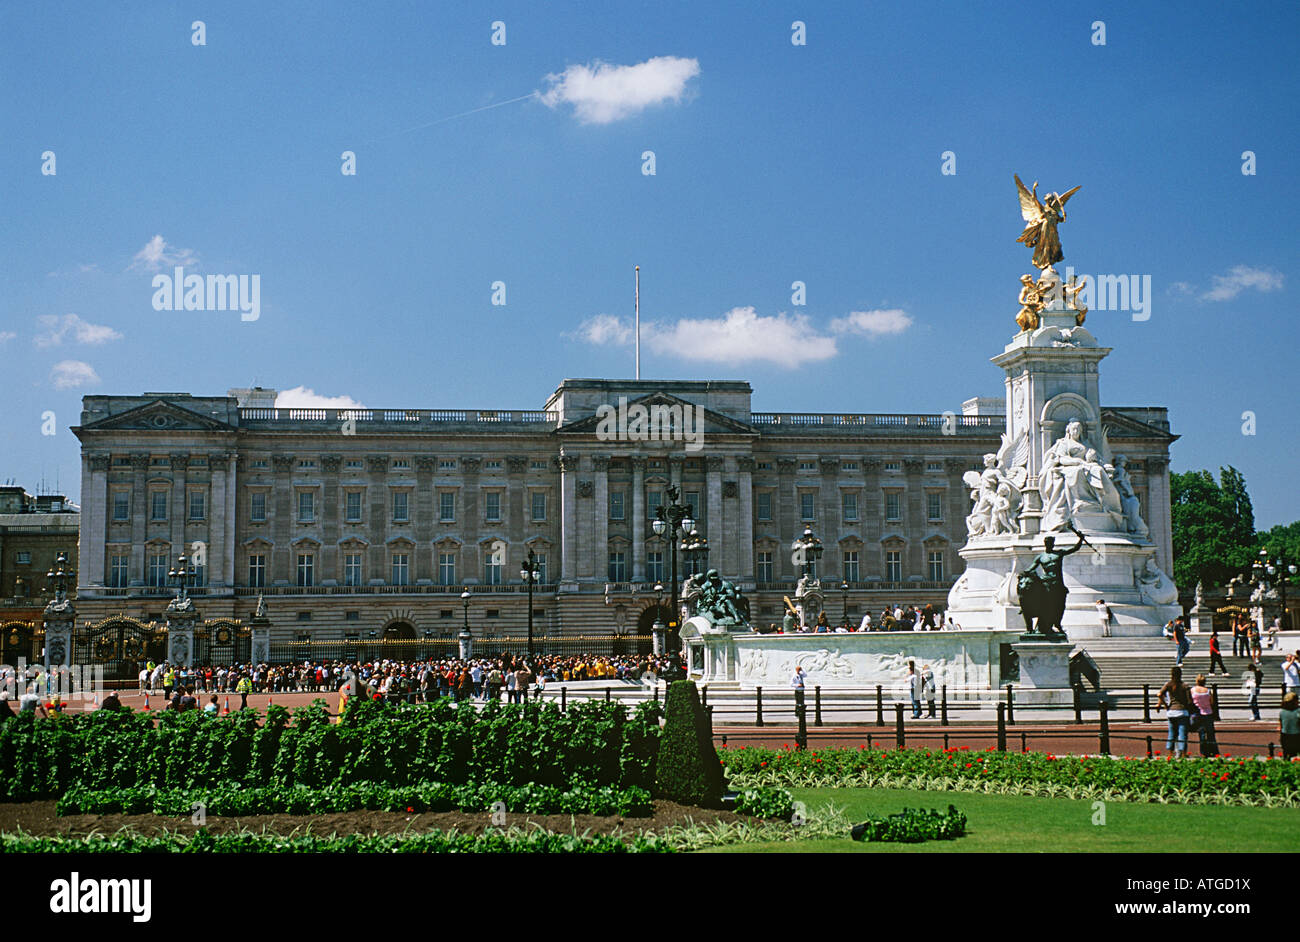 El palacio de Buckingham Foto de stock